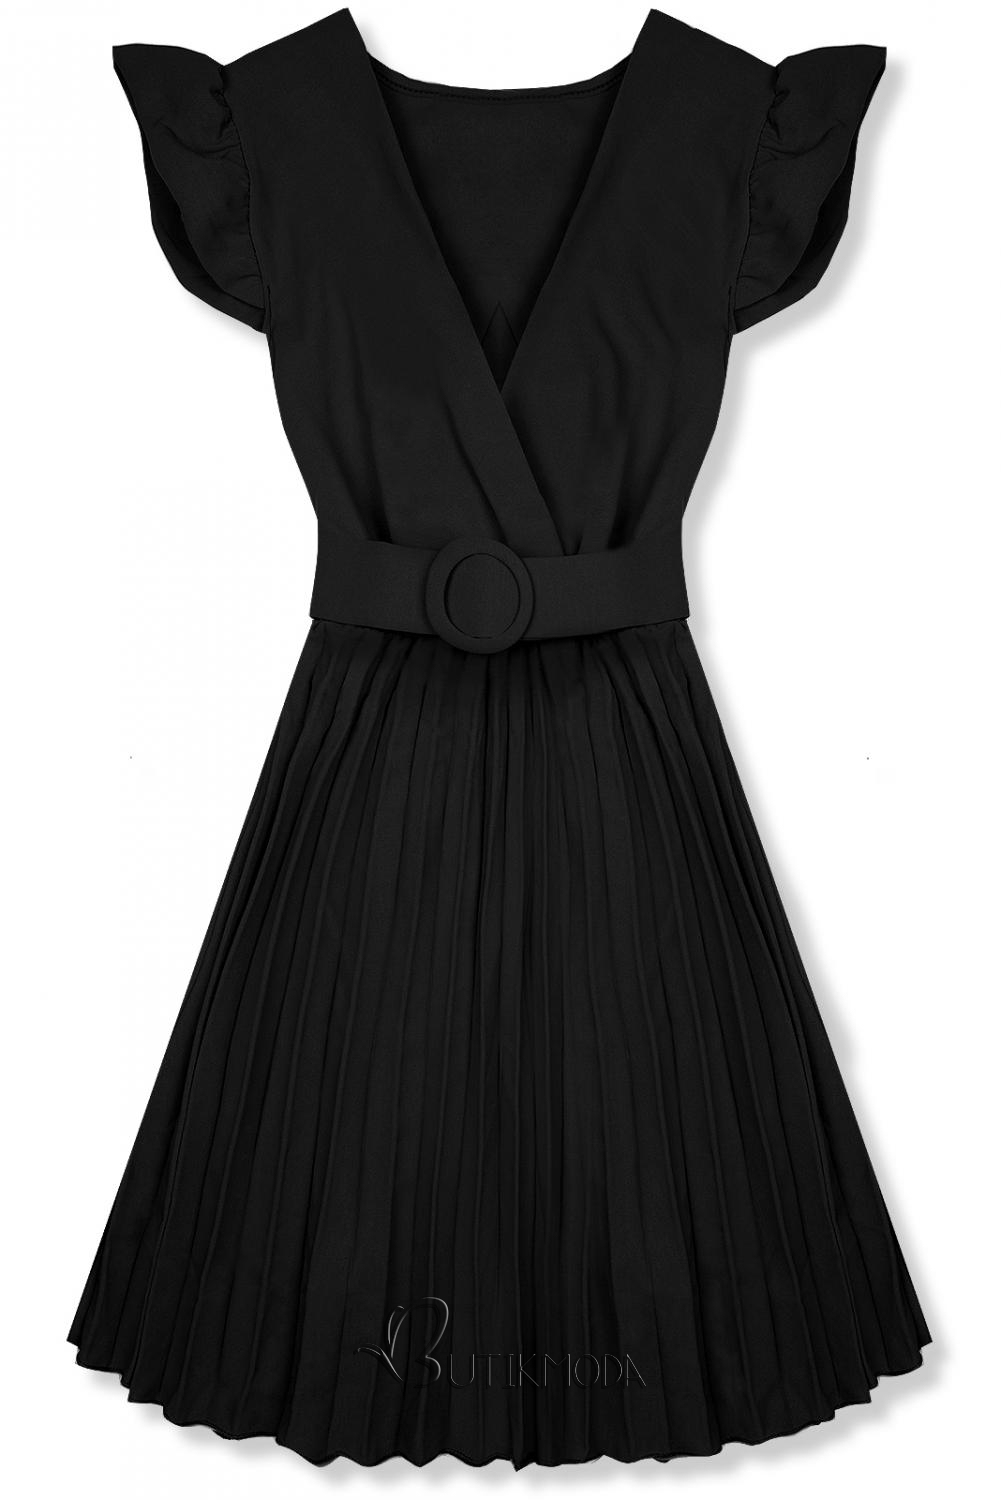 Fekete színű ruha rakott szoknyával